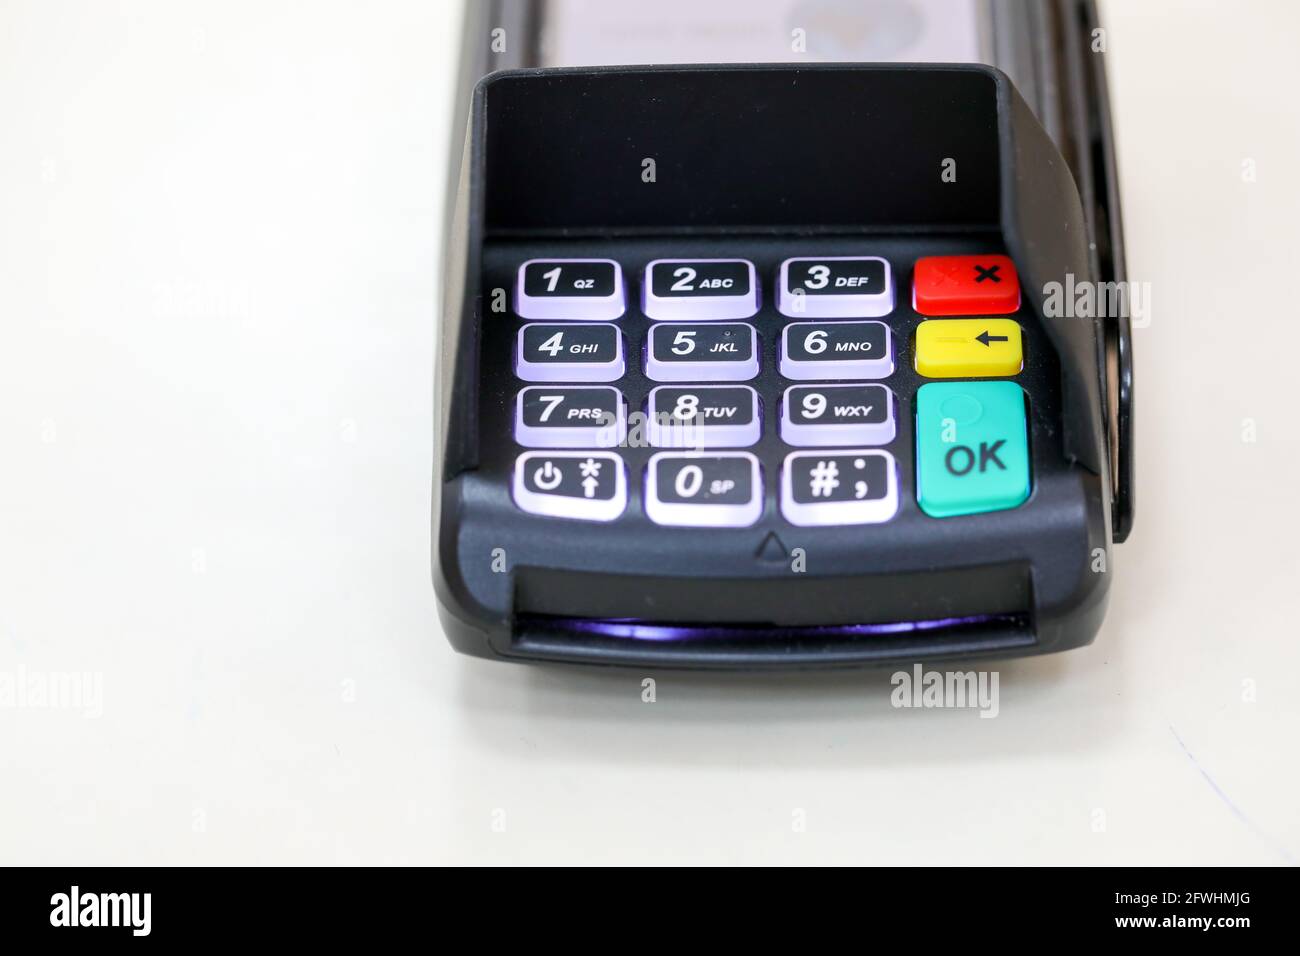 Credit card reader or POS terminal. Payment terminal. Stock Photo